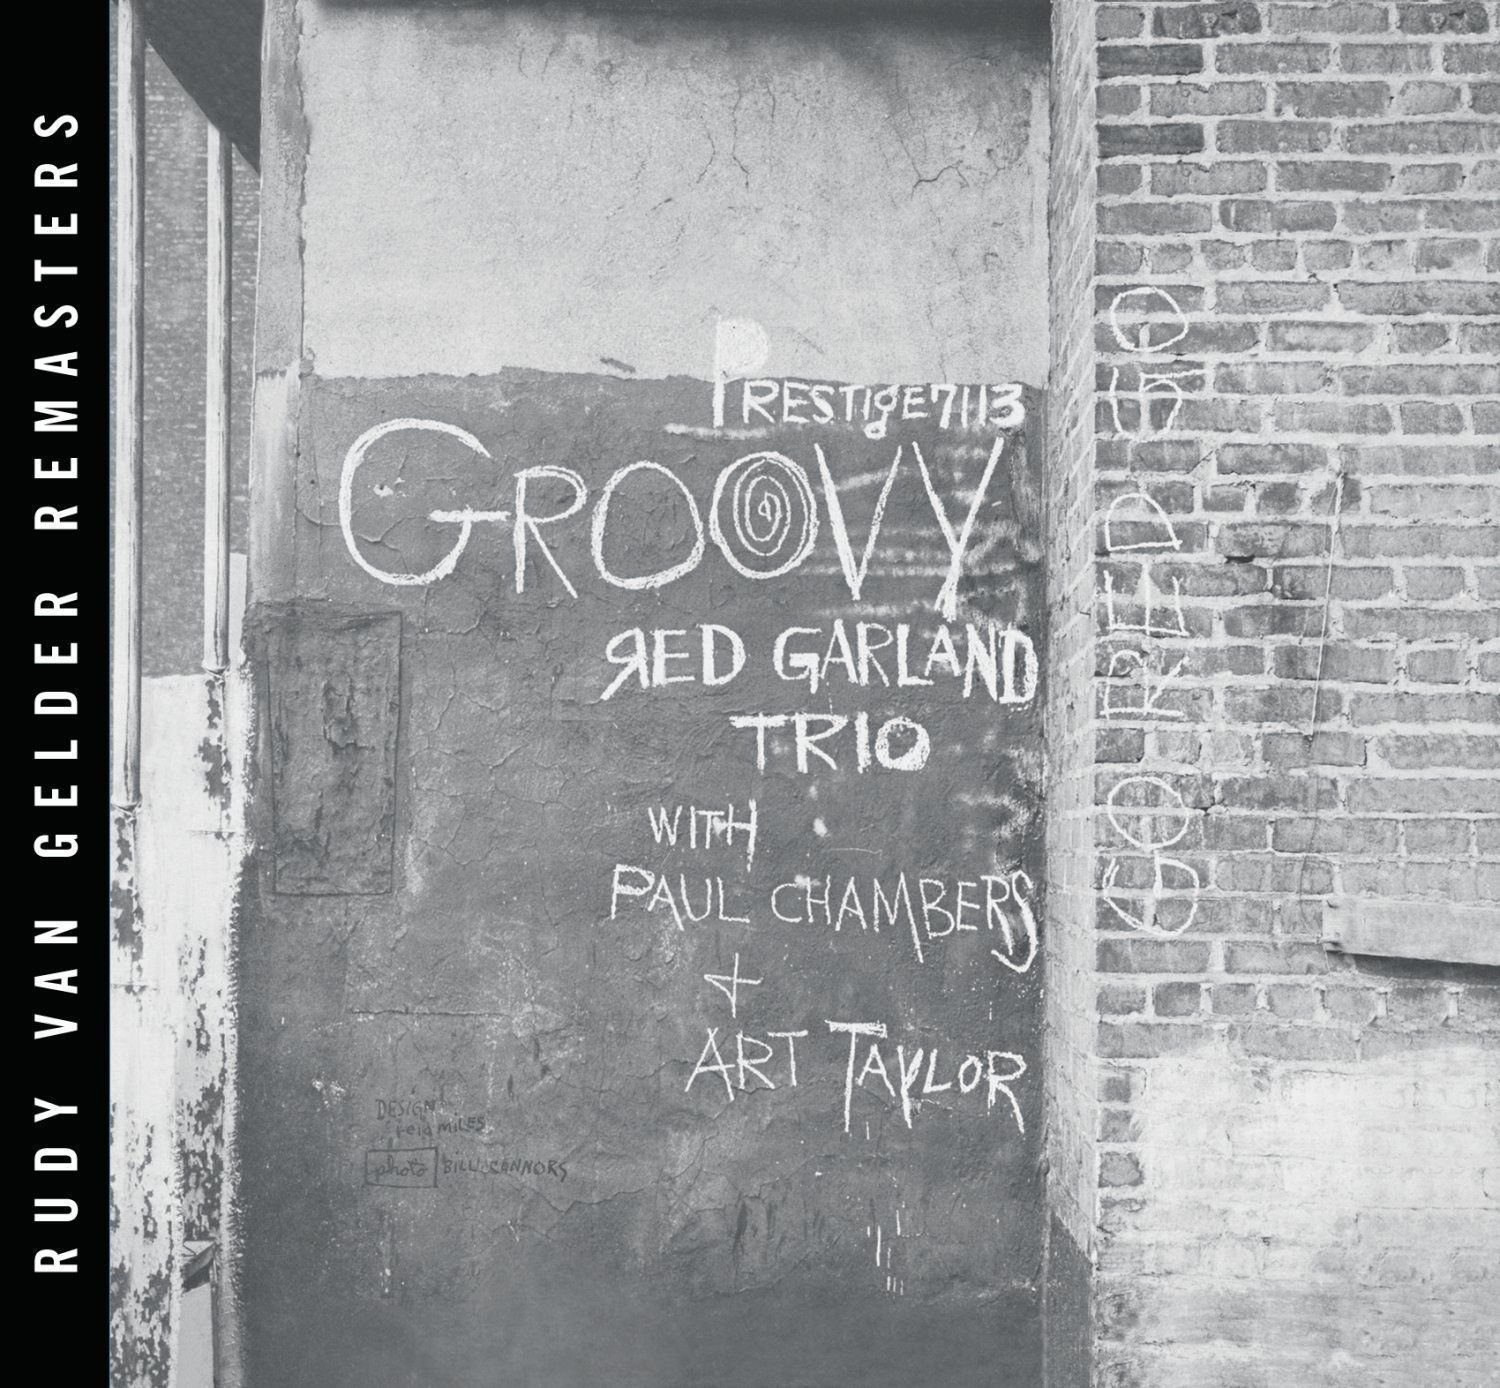 Red Garland - Groovy (LP) Red Garland